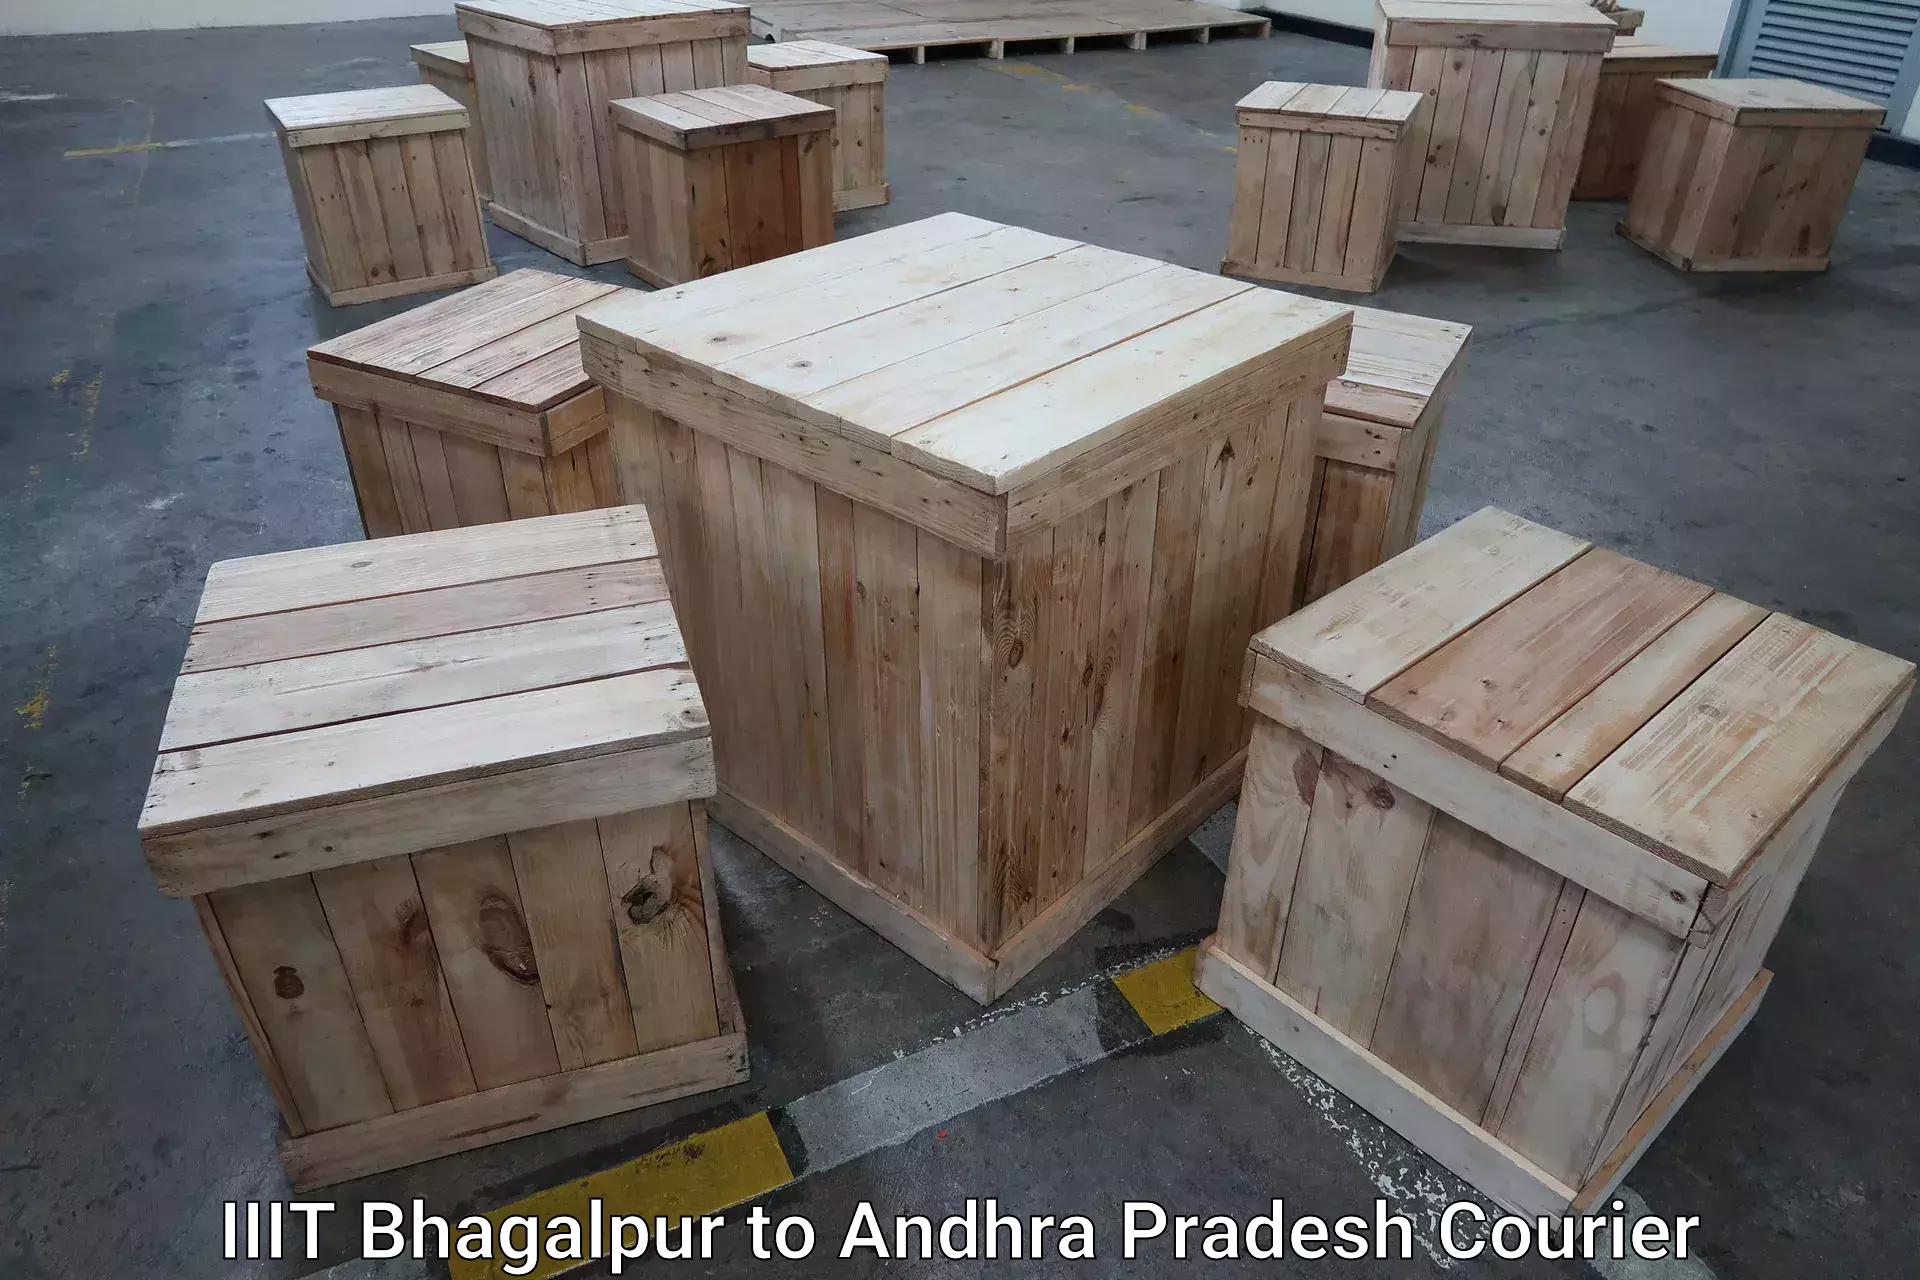 Door-to-door baggage service in IIIT Bhagalpur to Andhra Pradesh